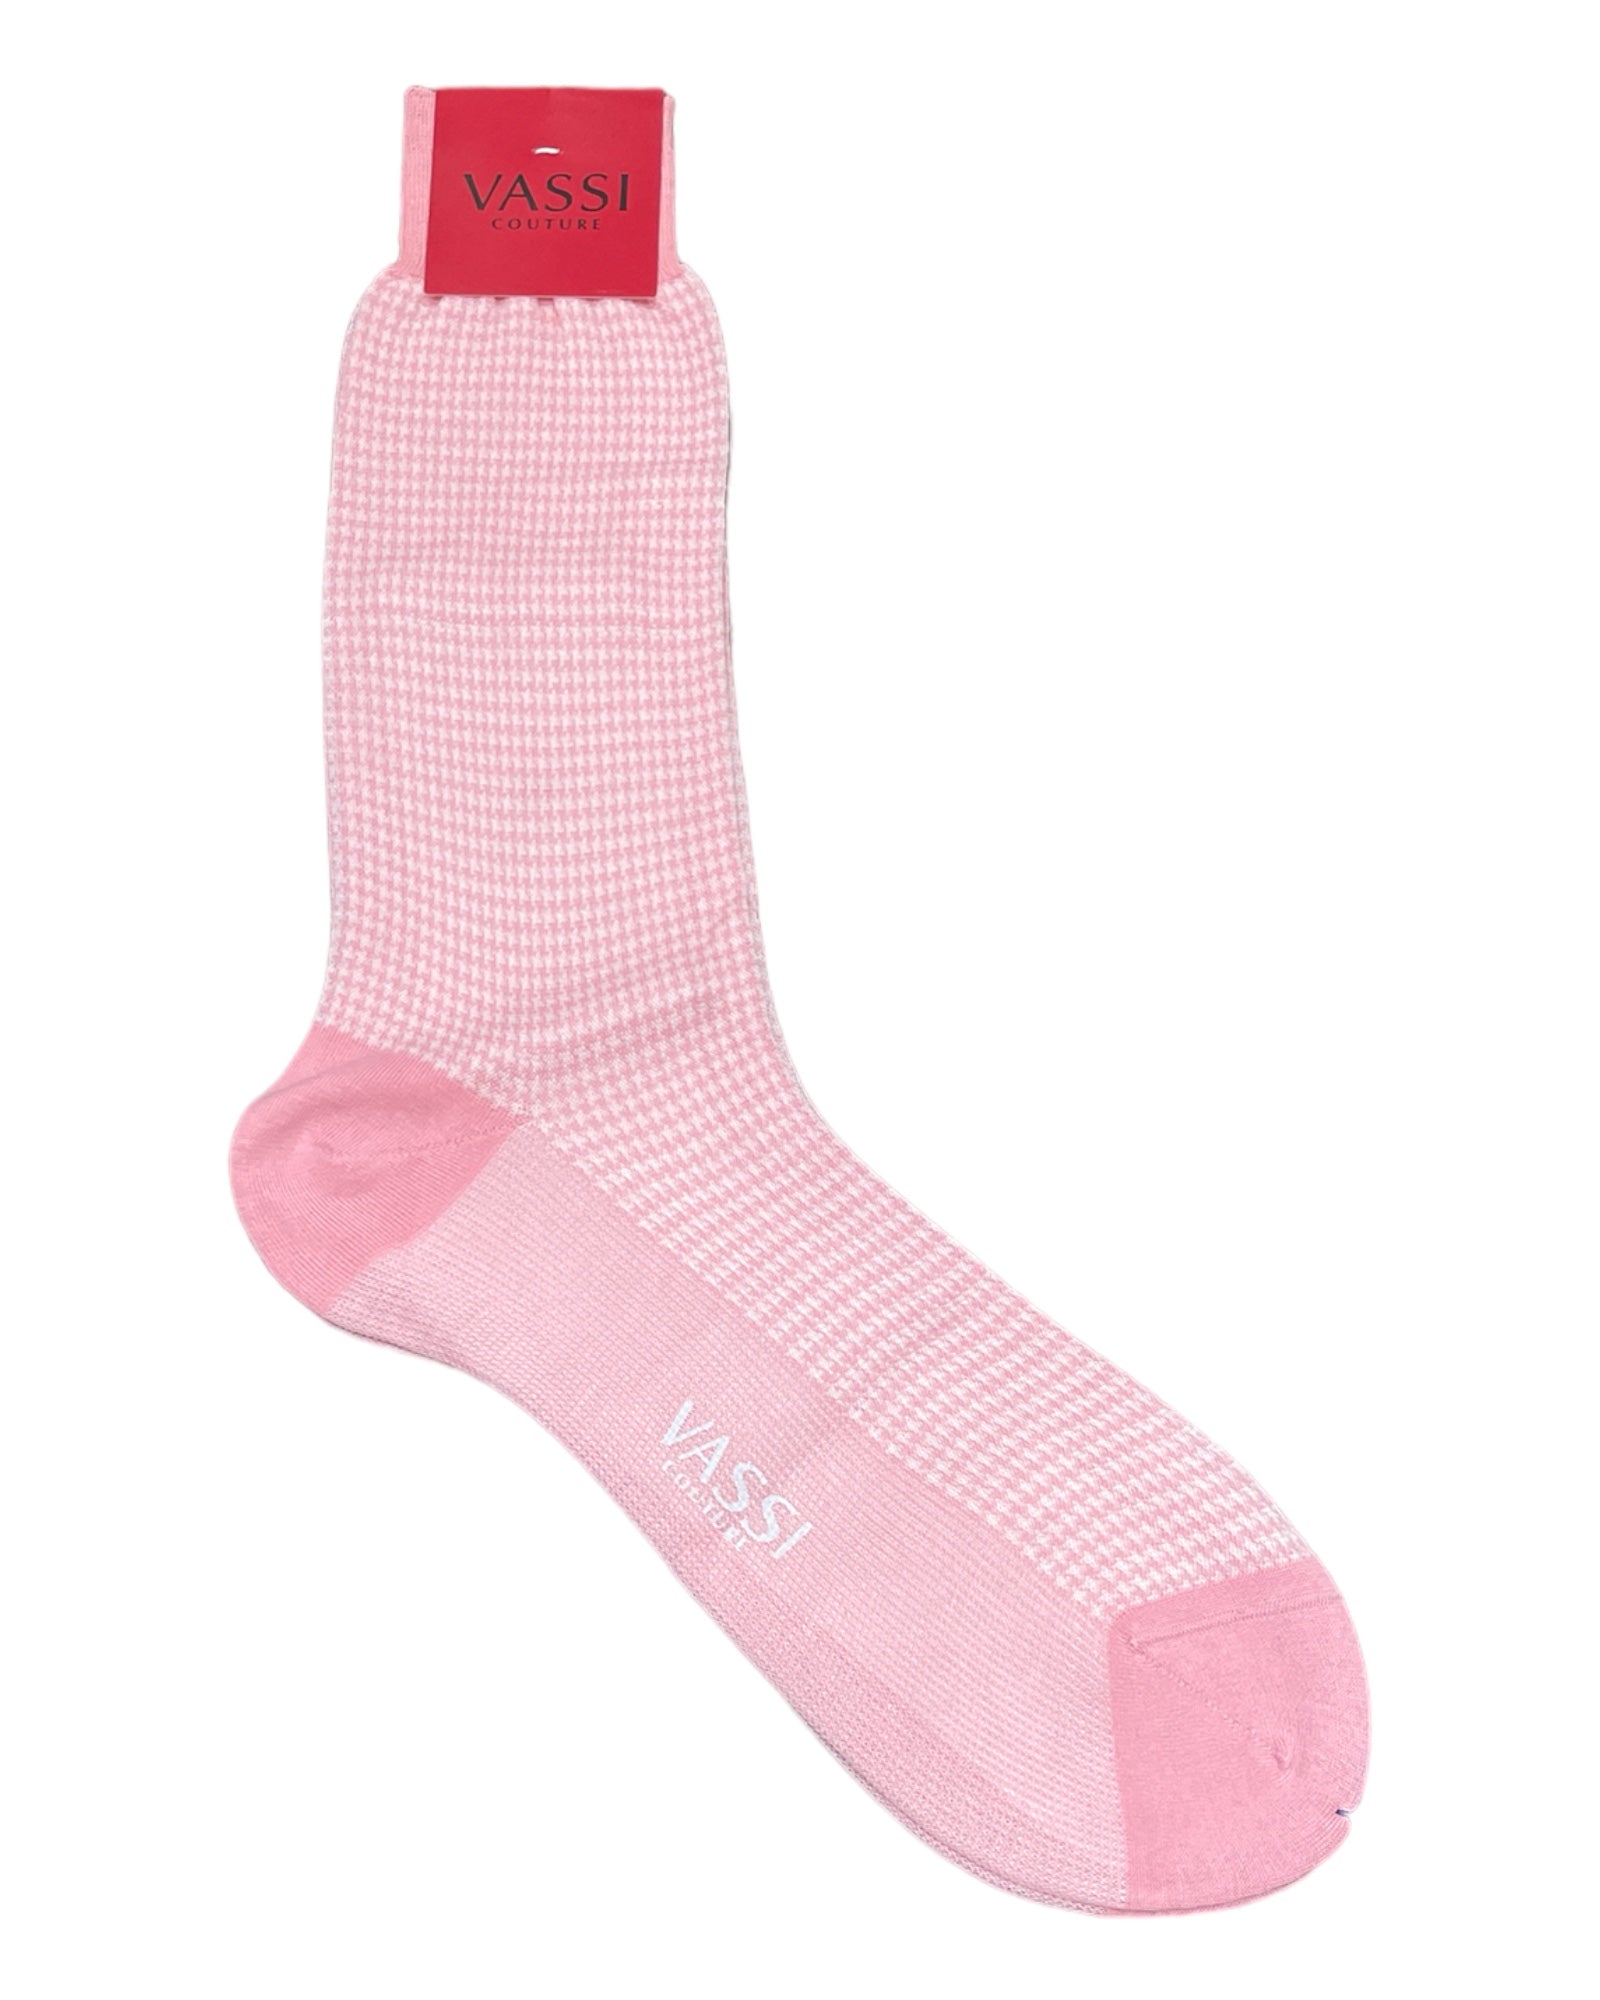 Extra-fine Houndstooth Cotton Socks SocksPink